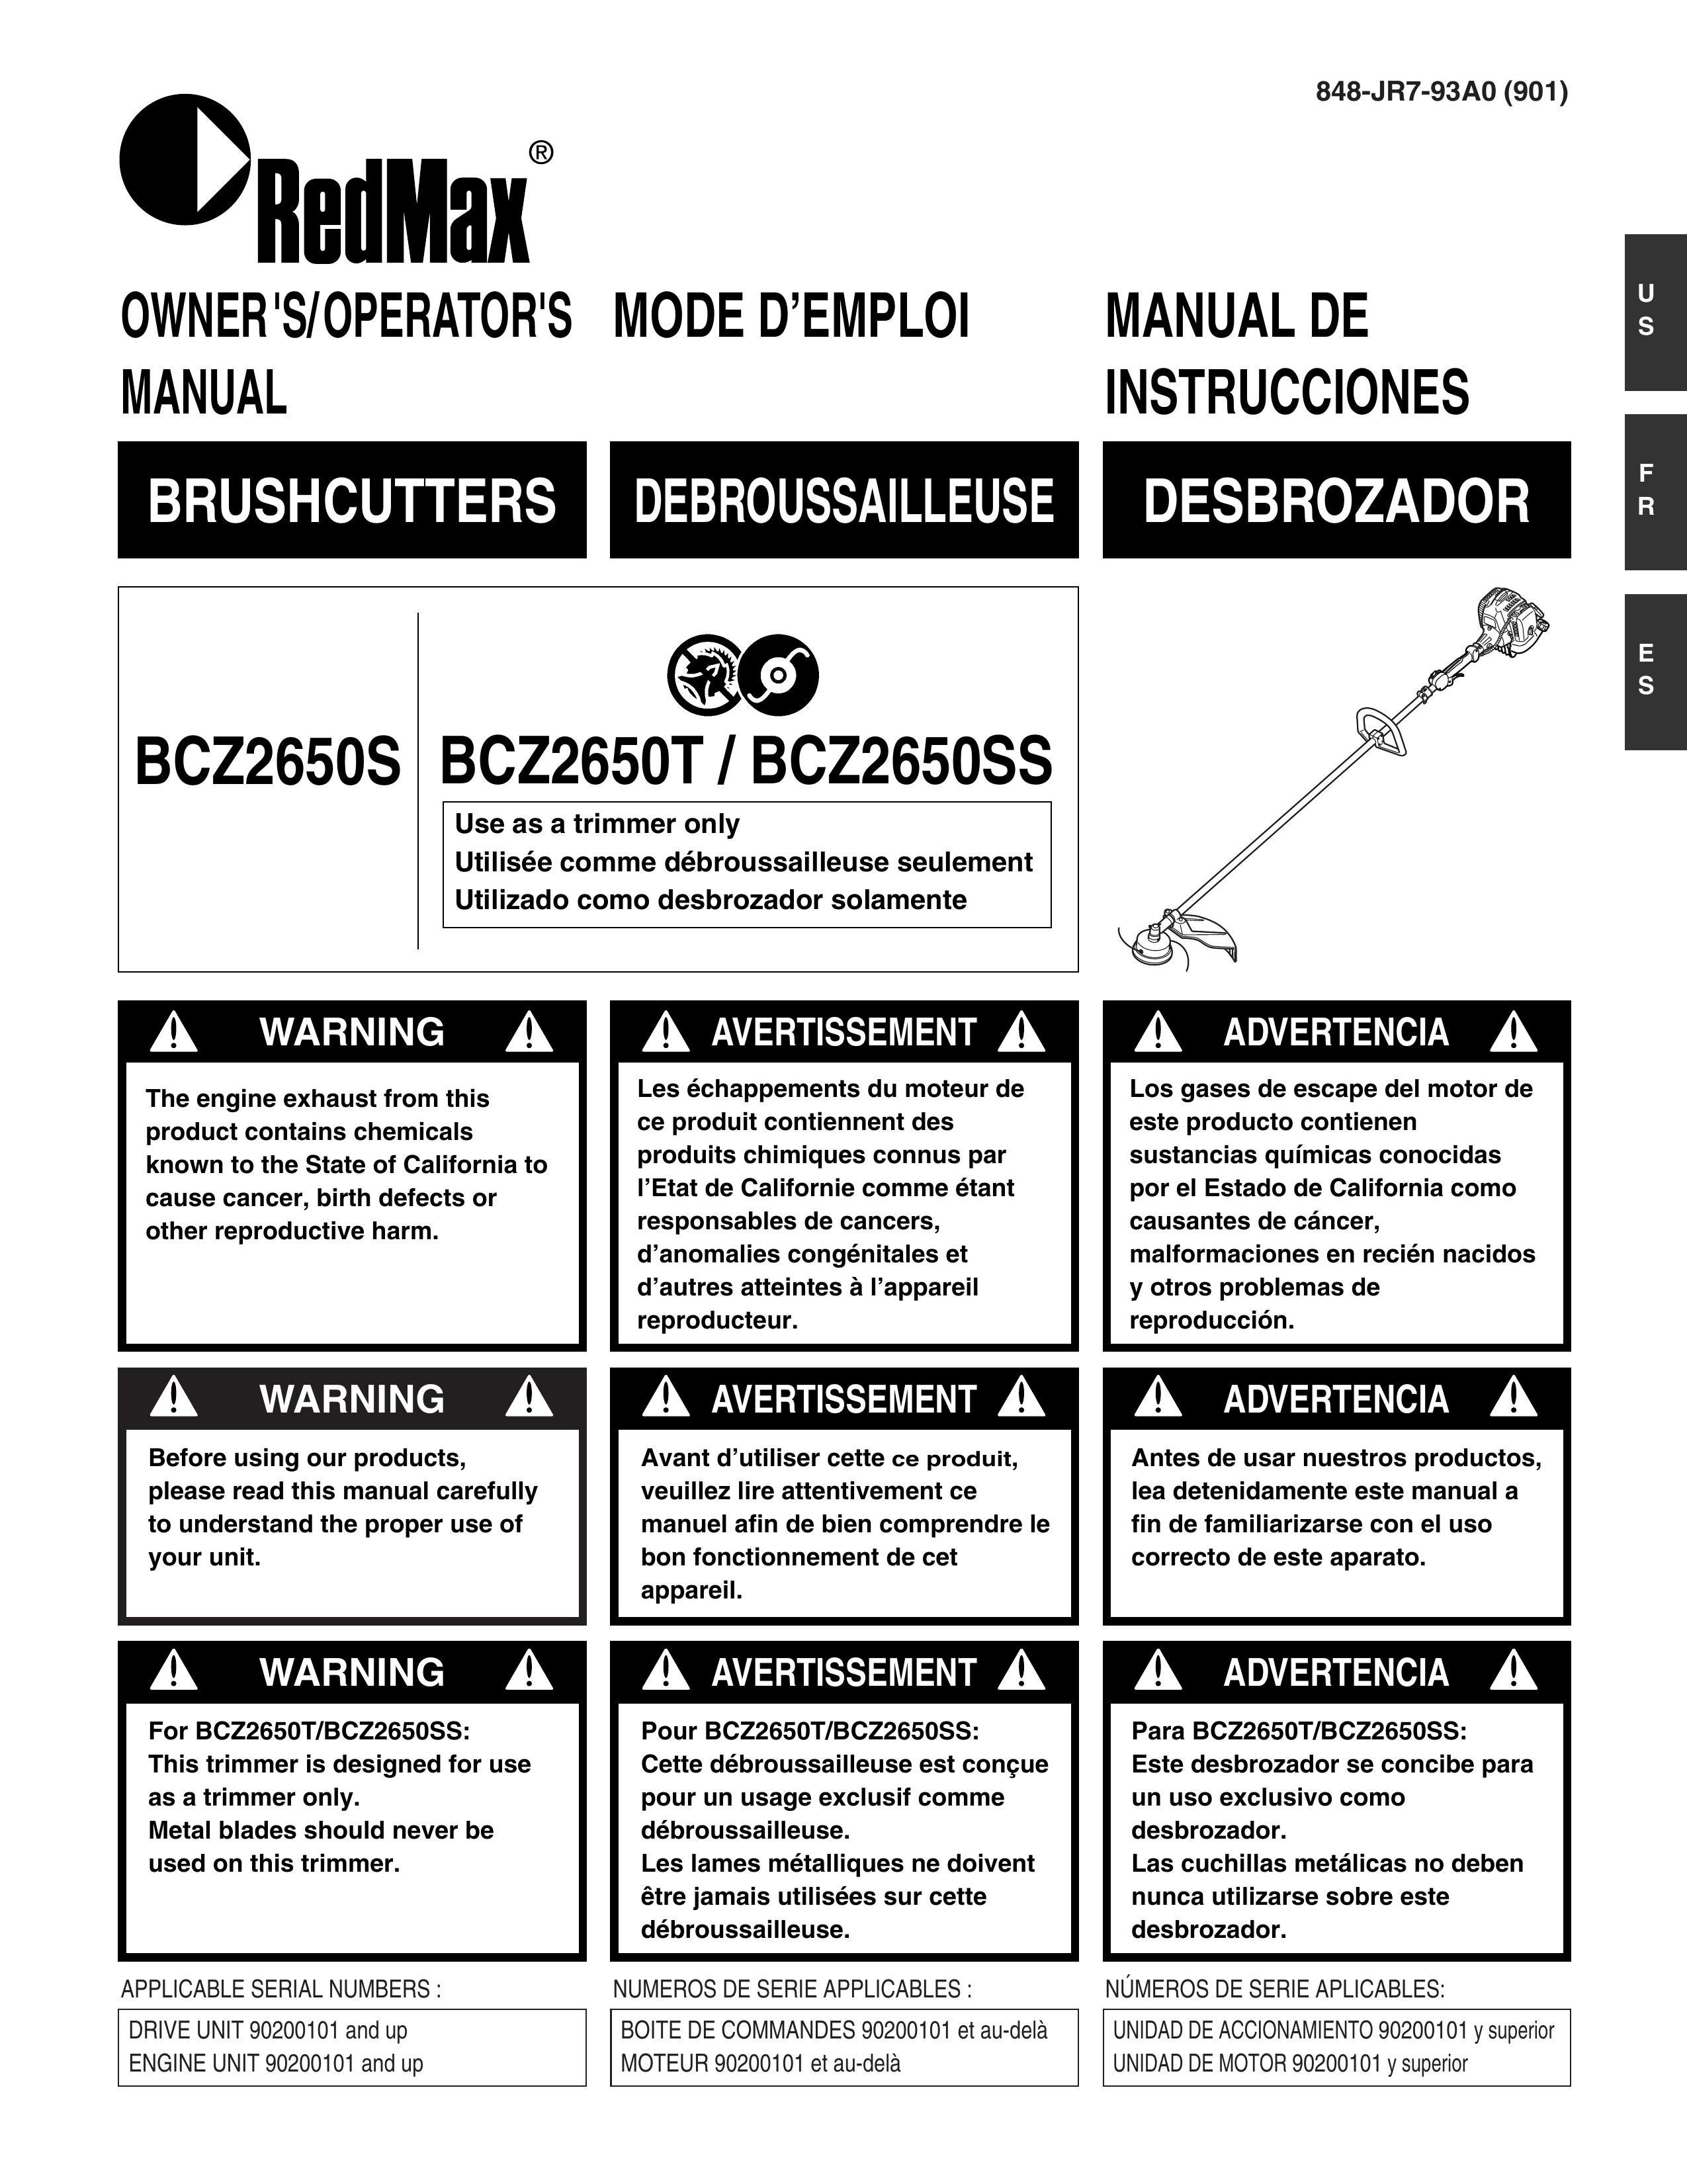 RedMax BCZ2650T Brush Cutter User Manual